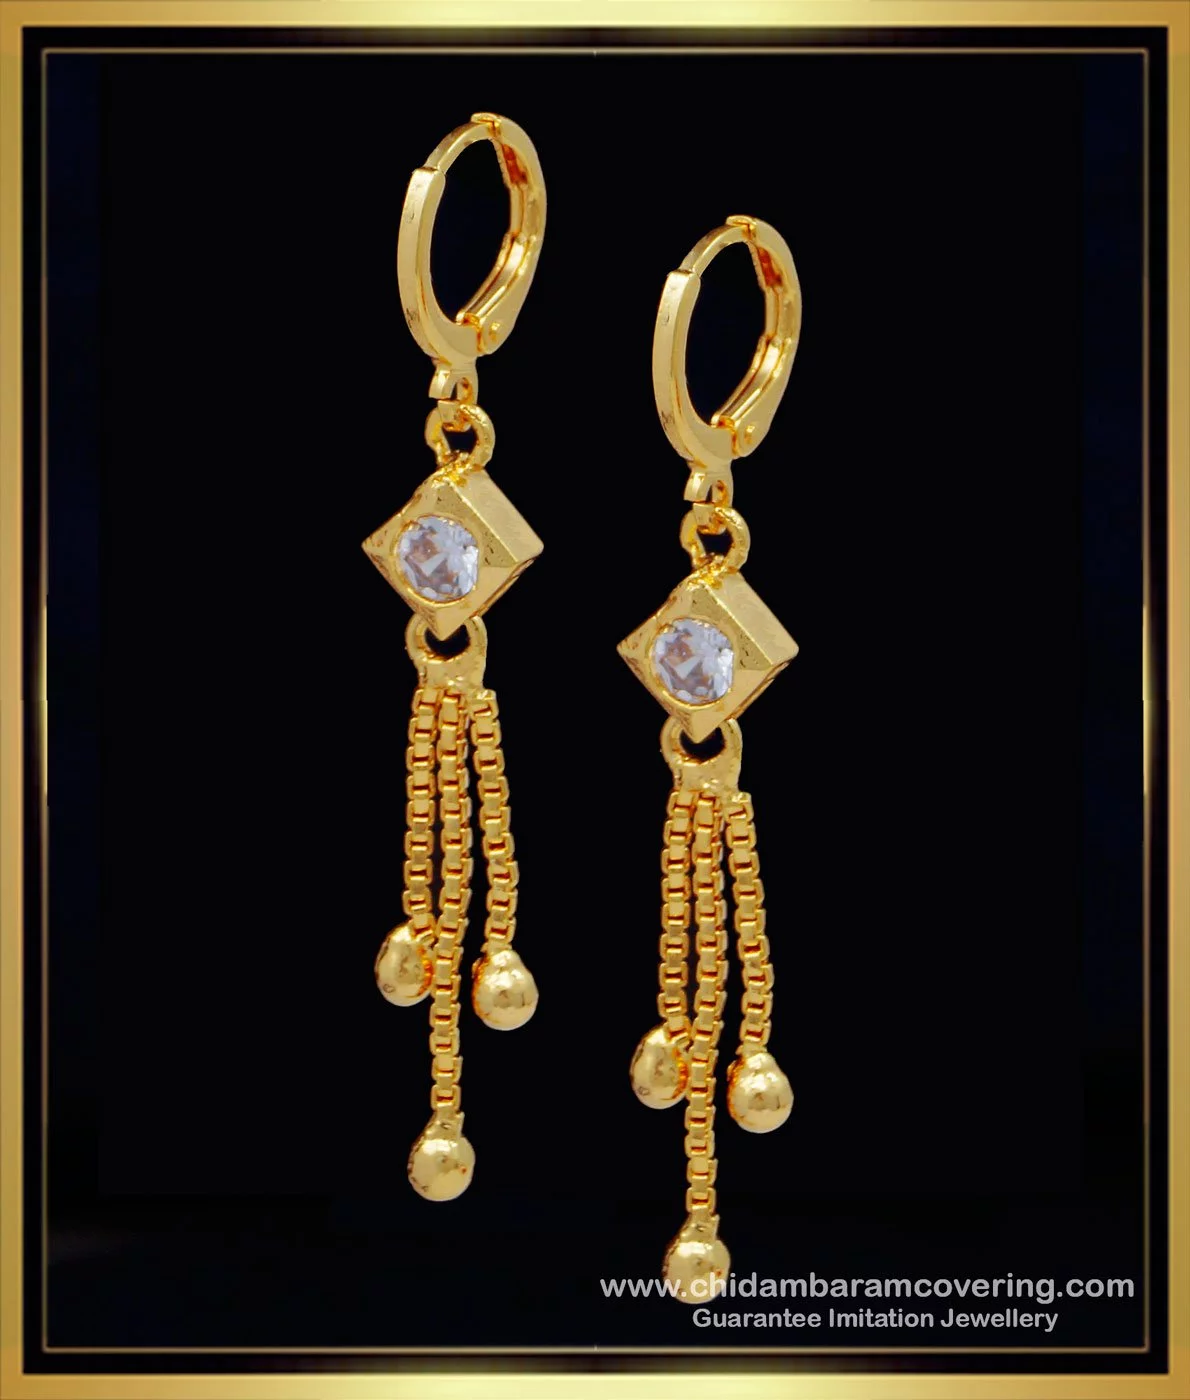 Buy Elegant White Stone Gold Earring Design One Gram Gold Bali